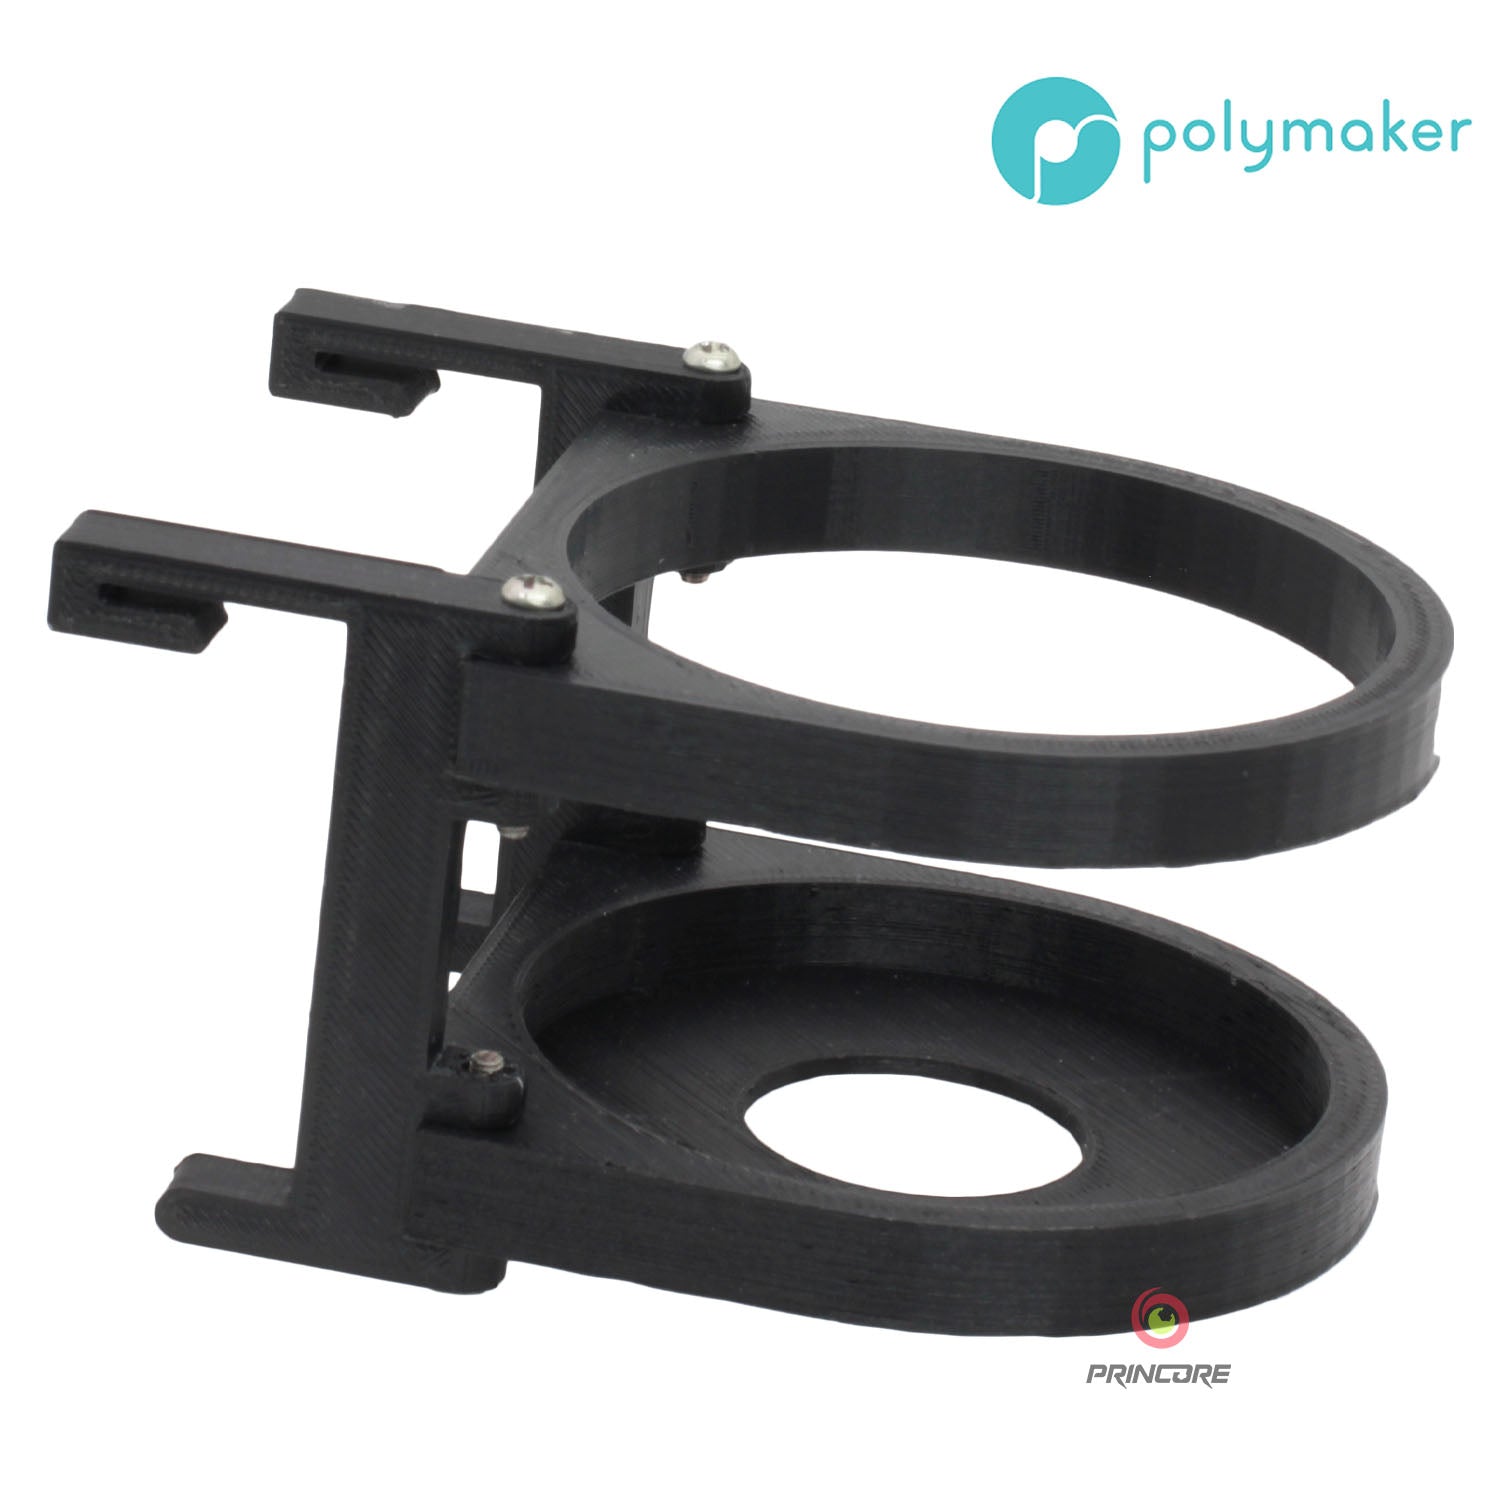 Polymaker PolyLite™ ASA - Schwarz [1.75mm] (34,90€/Kg)